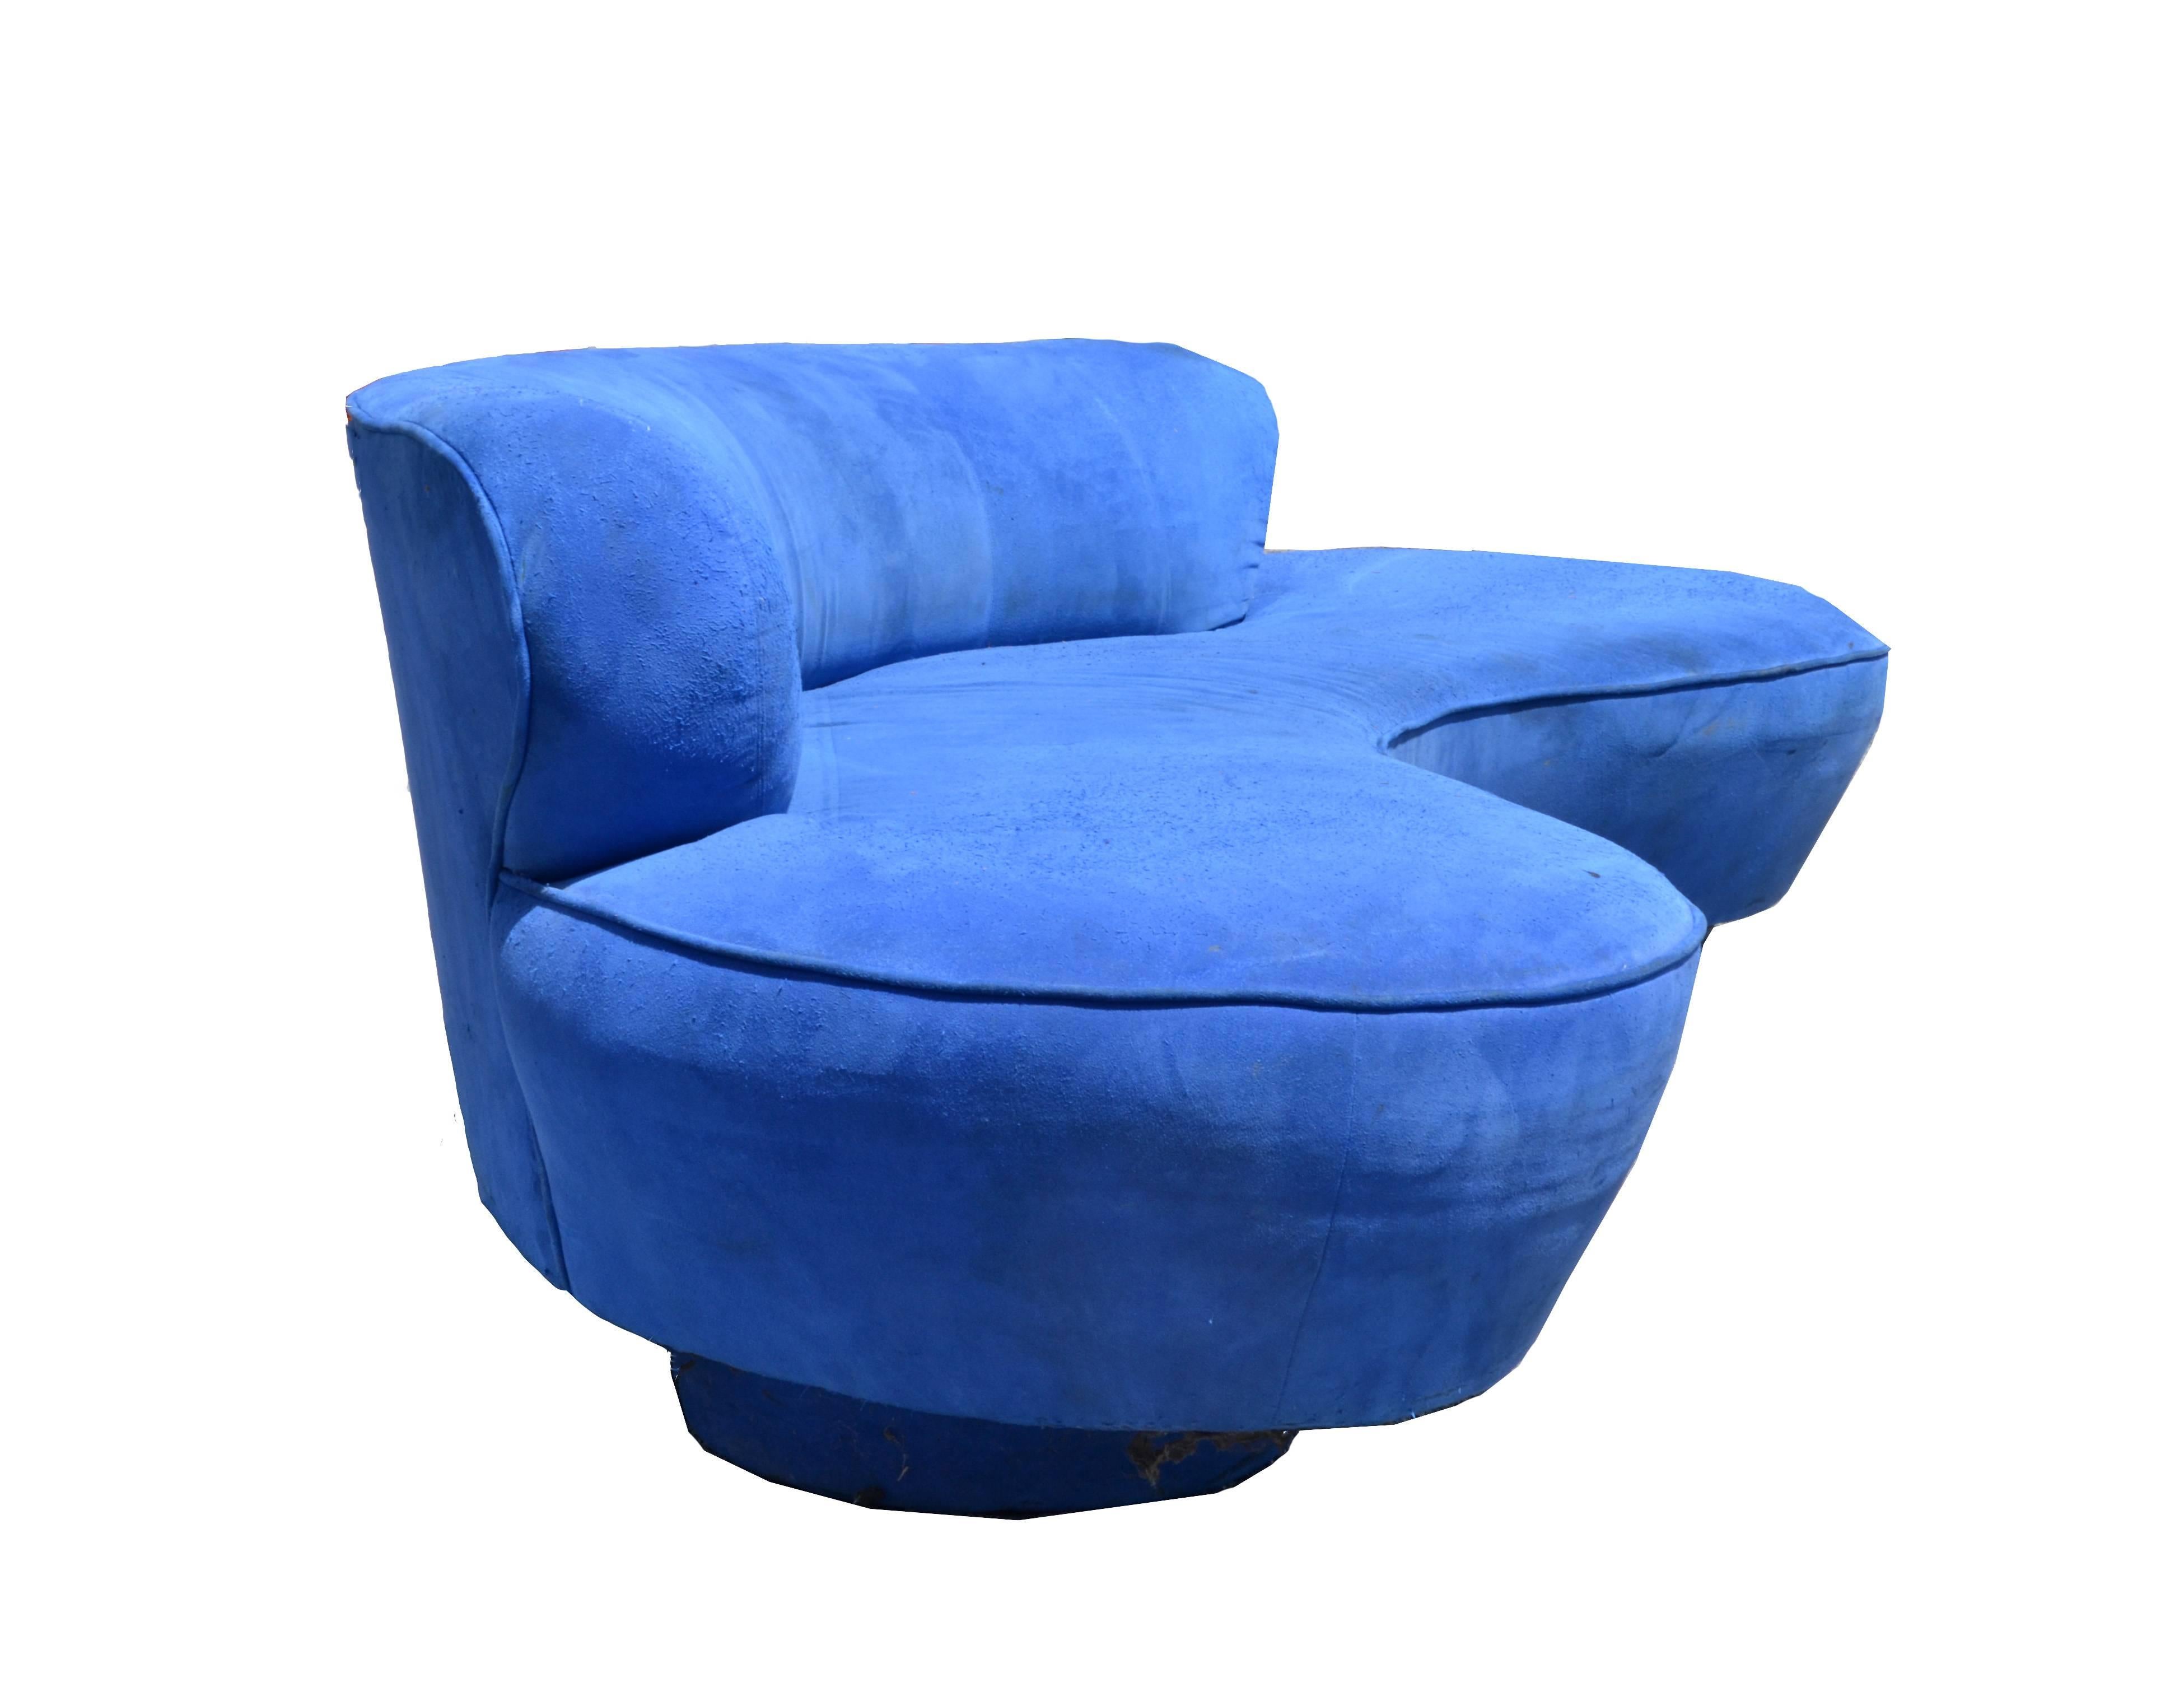 Original Vintage Vladimir Kagan Cloud Serpentine Sofa in blauer Mikrofaser von Directional Furniture Company.
Original Label darunter, Directional, Made in USA.
Hinweis: Das Sofa braucht neuen Schaumstoff und eine neue Polsterung. Wir können dieses